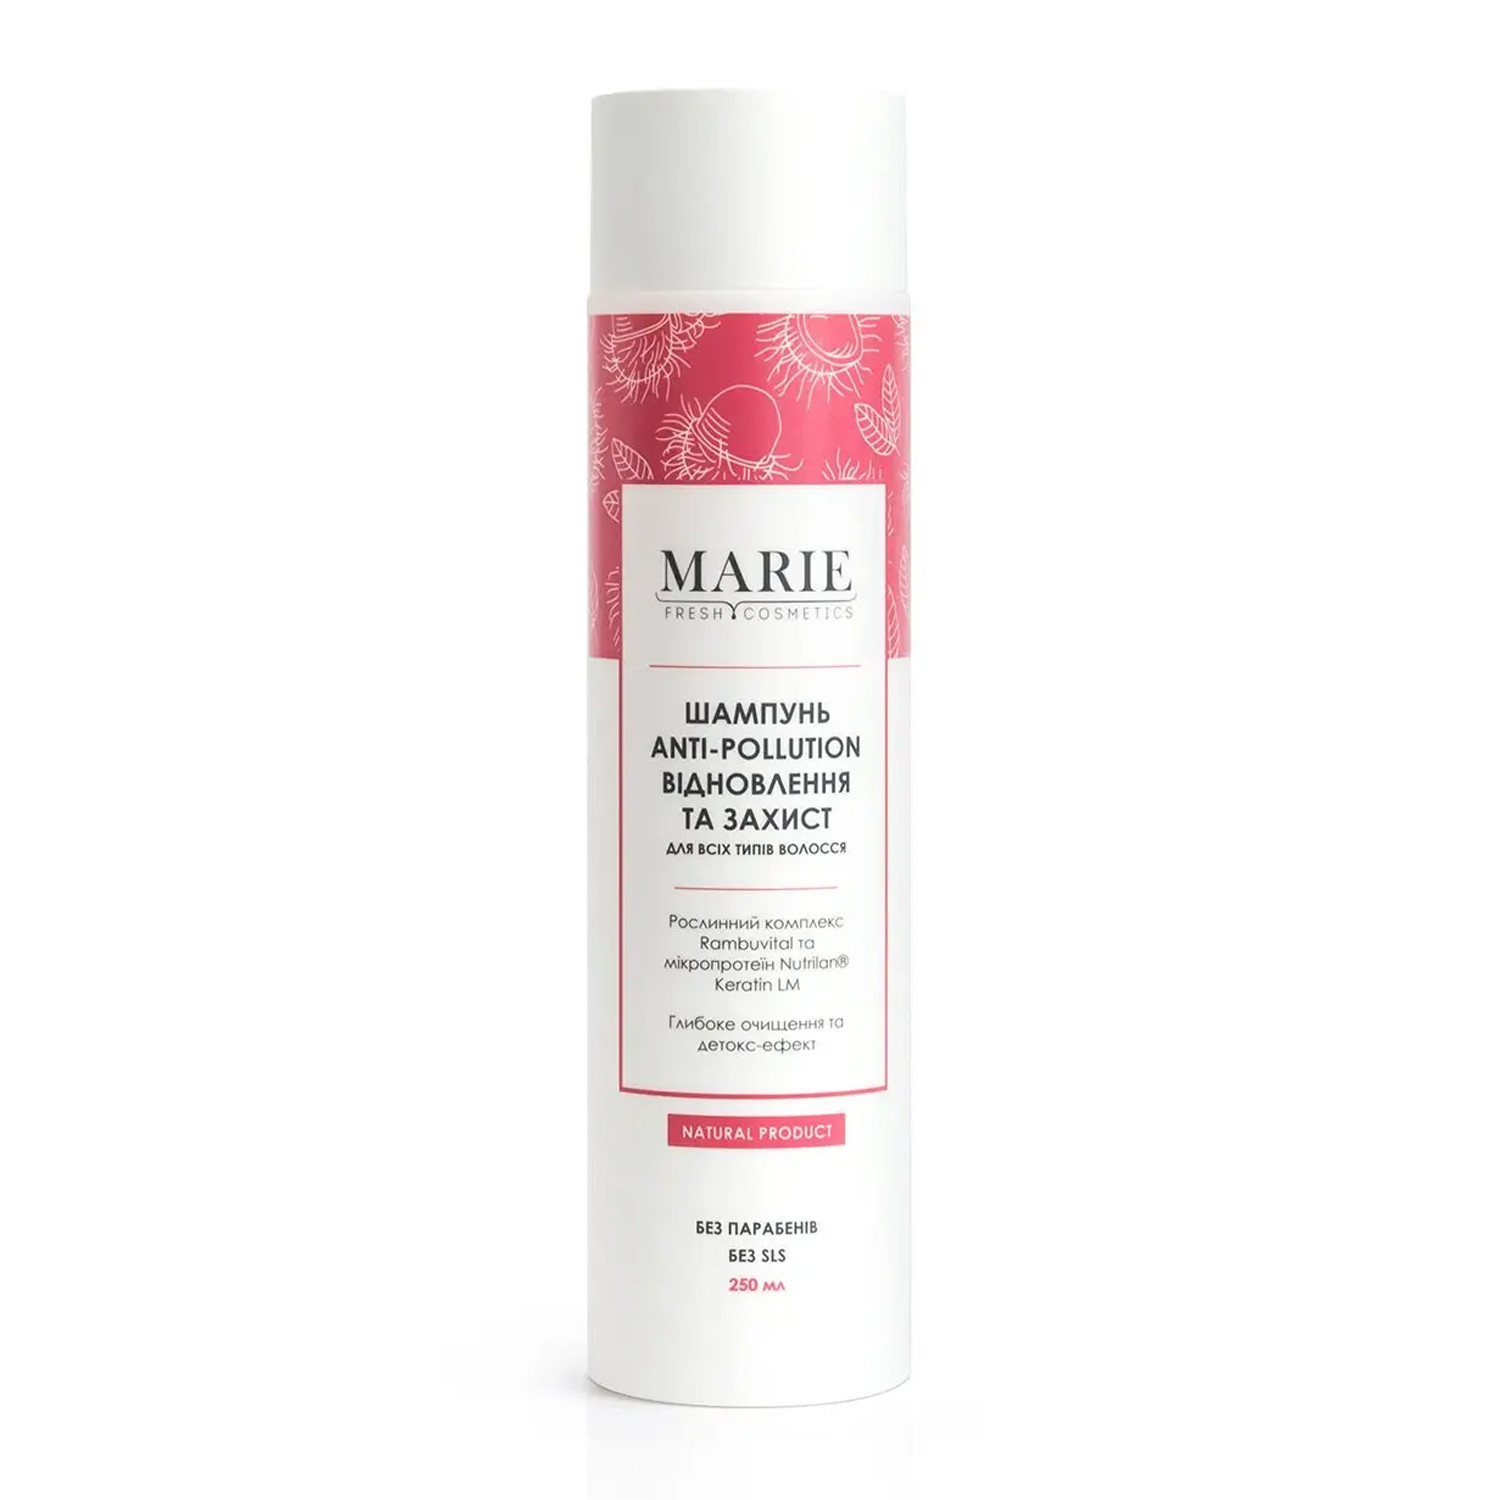 Marie Fresh Cosmetics Шампунь Восстановление и защита для всех типов волос